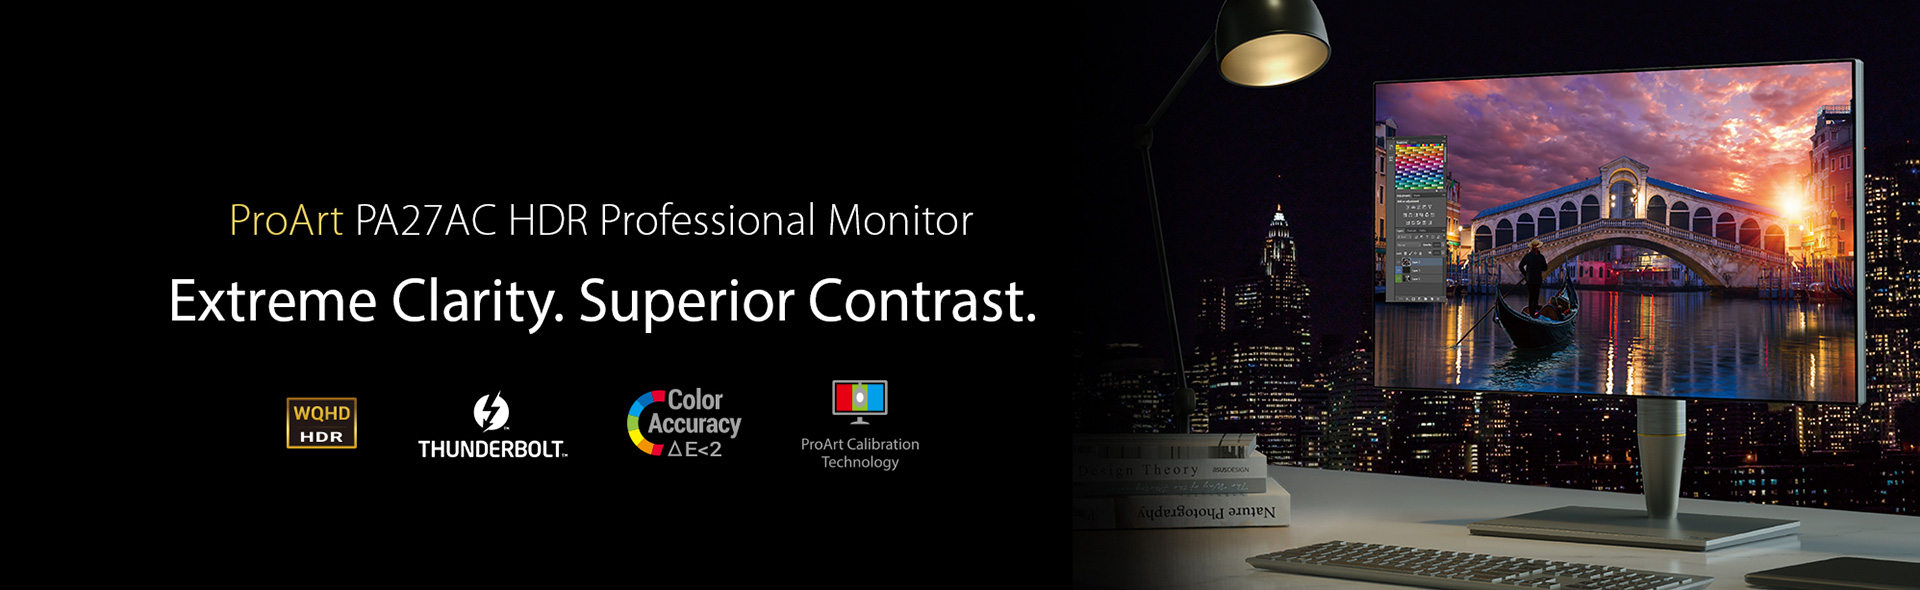 ProArt PA27AC HDR Professional Monitor